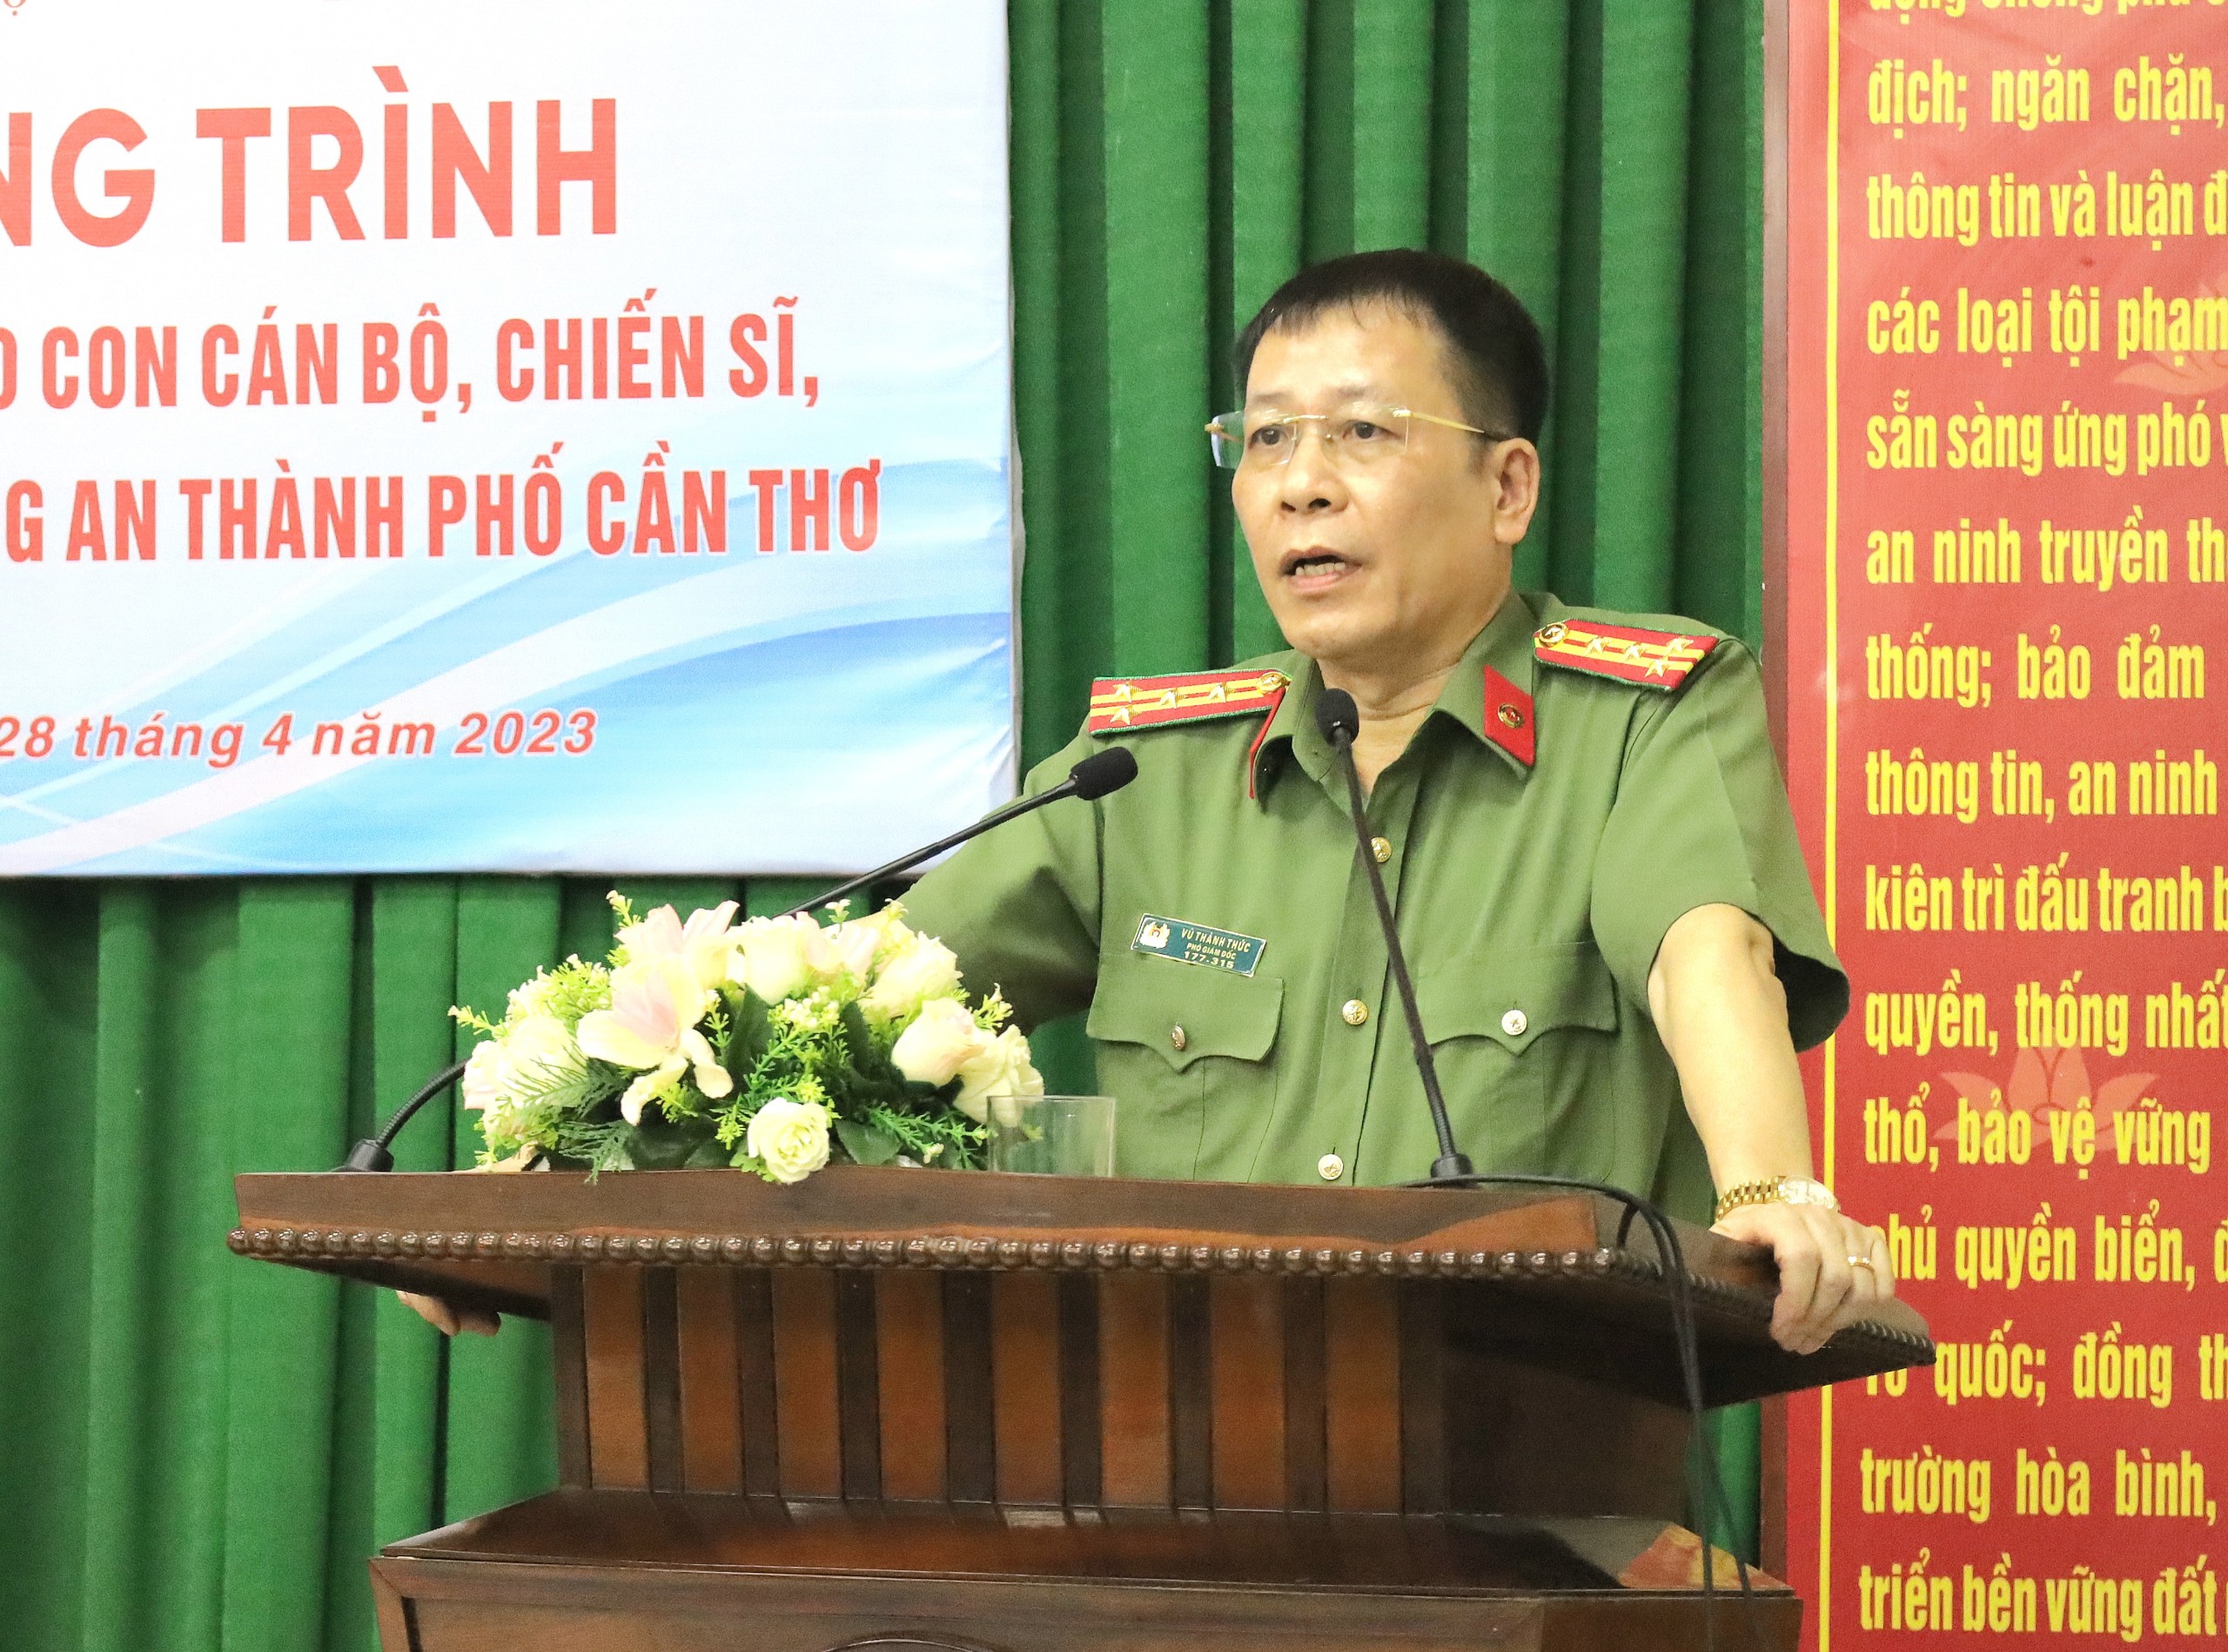 Đại tá Vũ Thành Thức – Phó Giám đốc Công an TP. Cần Thơ phát biểu tại chương trình.